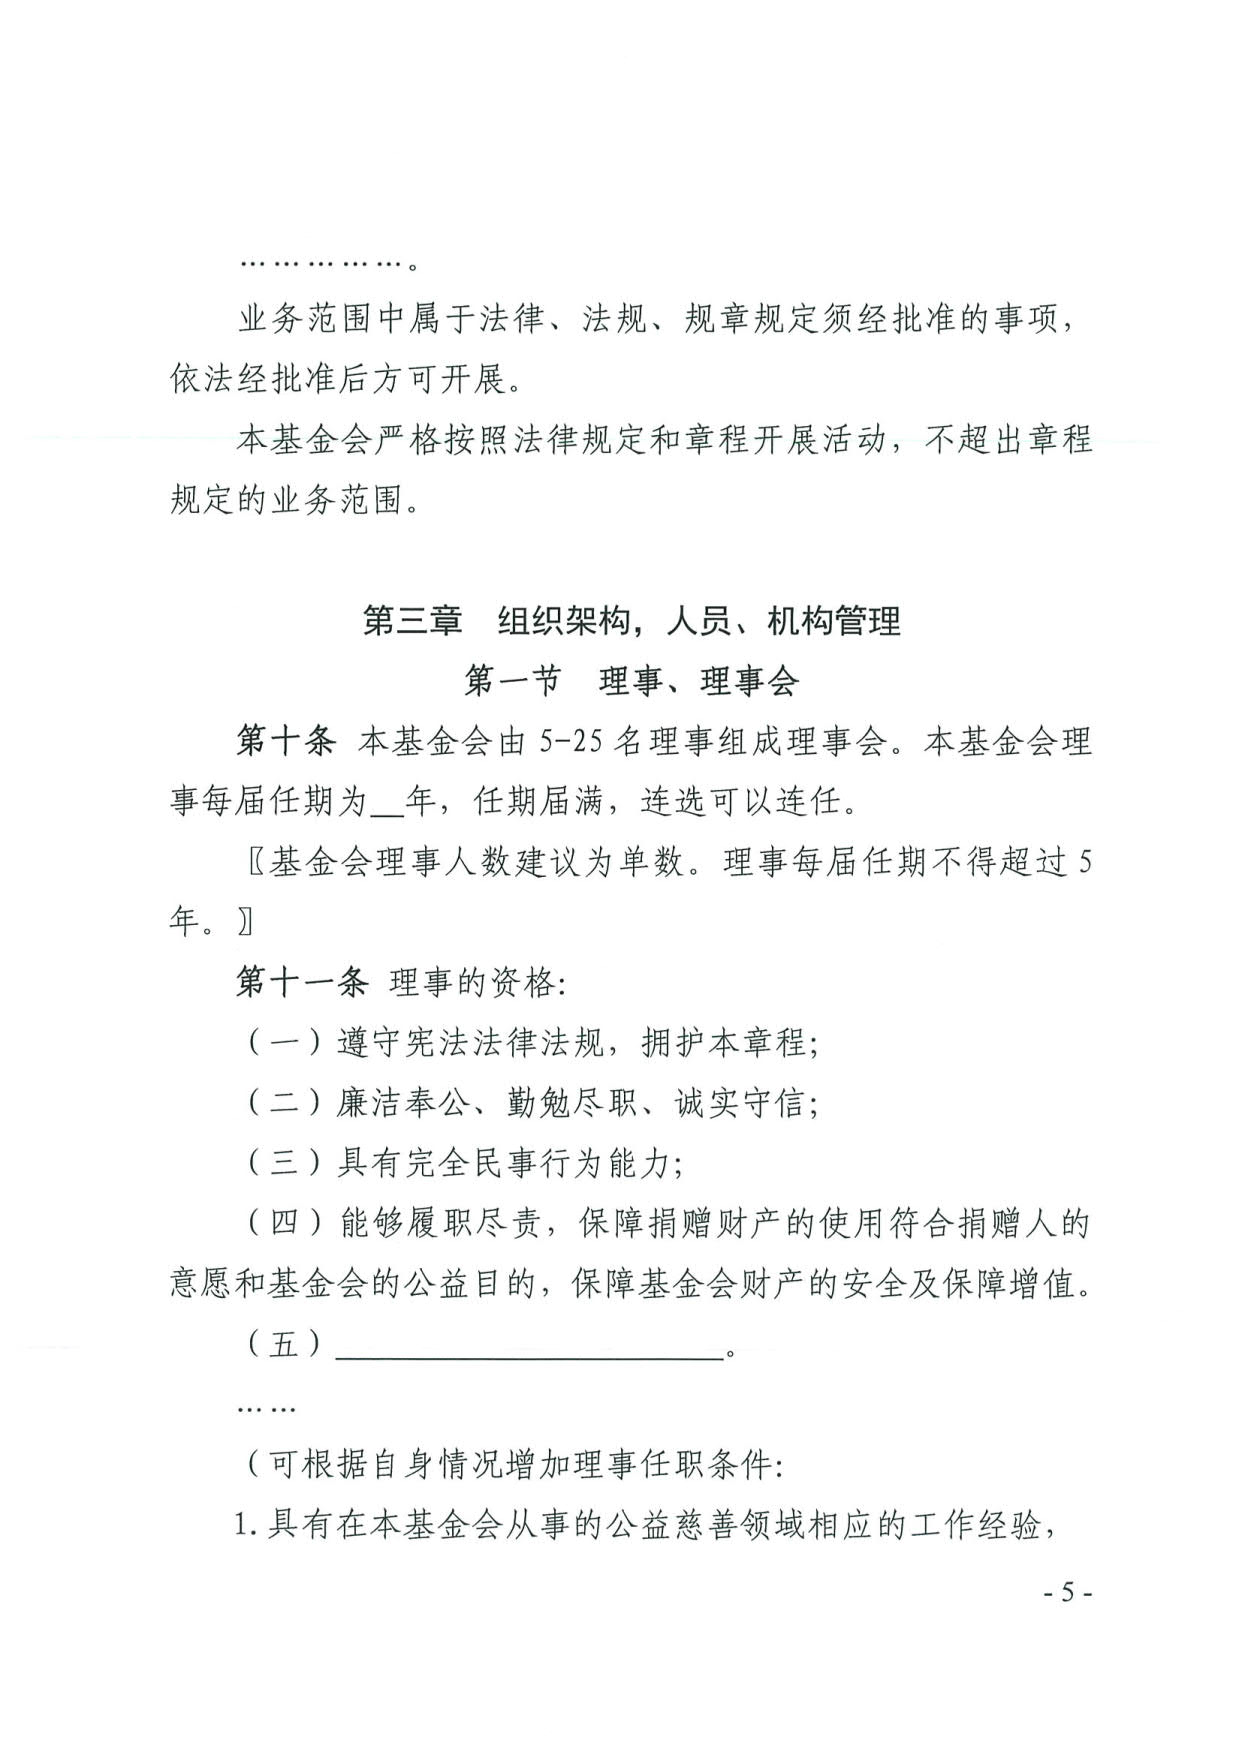 广东省民政厅关于印发《广东省基金会章程示范文本》的通知(4)_05.jpg